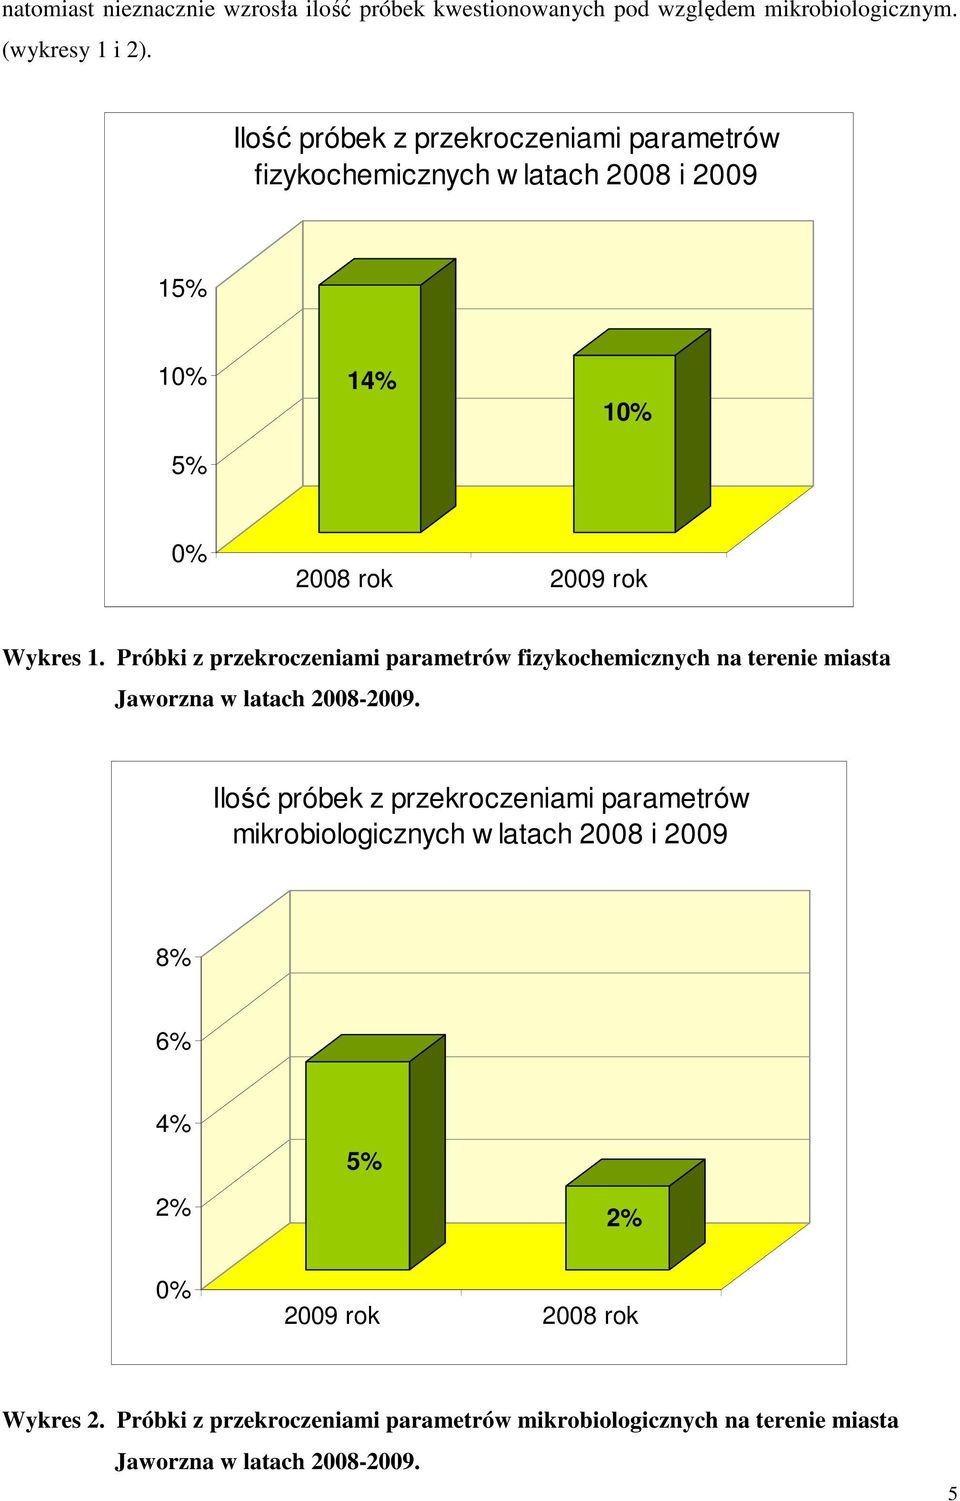 Próbki z przekroczeniami parametrów fizykochemicznych na terenie miasta Jaworzna w latach 2008-2009.